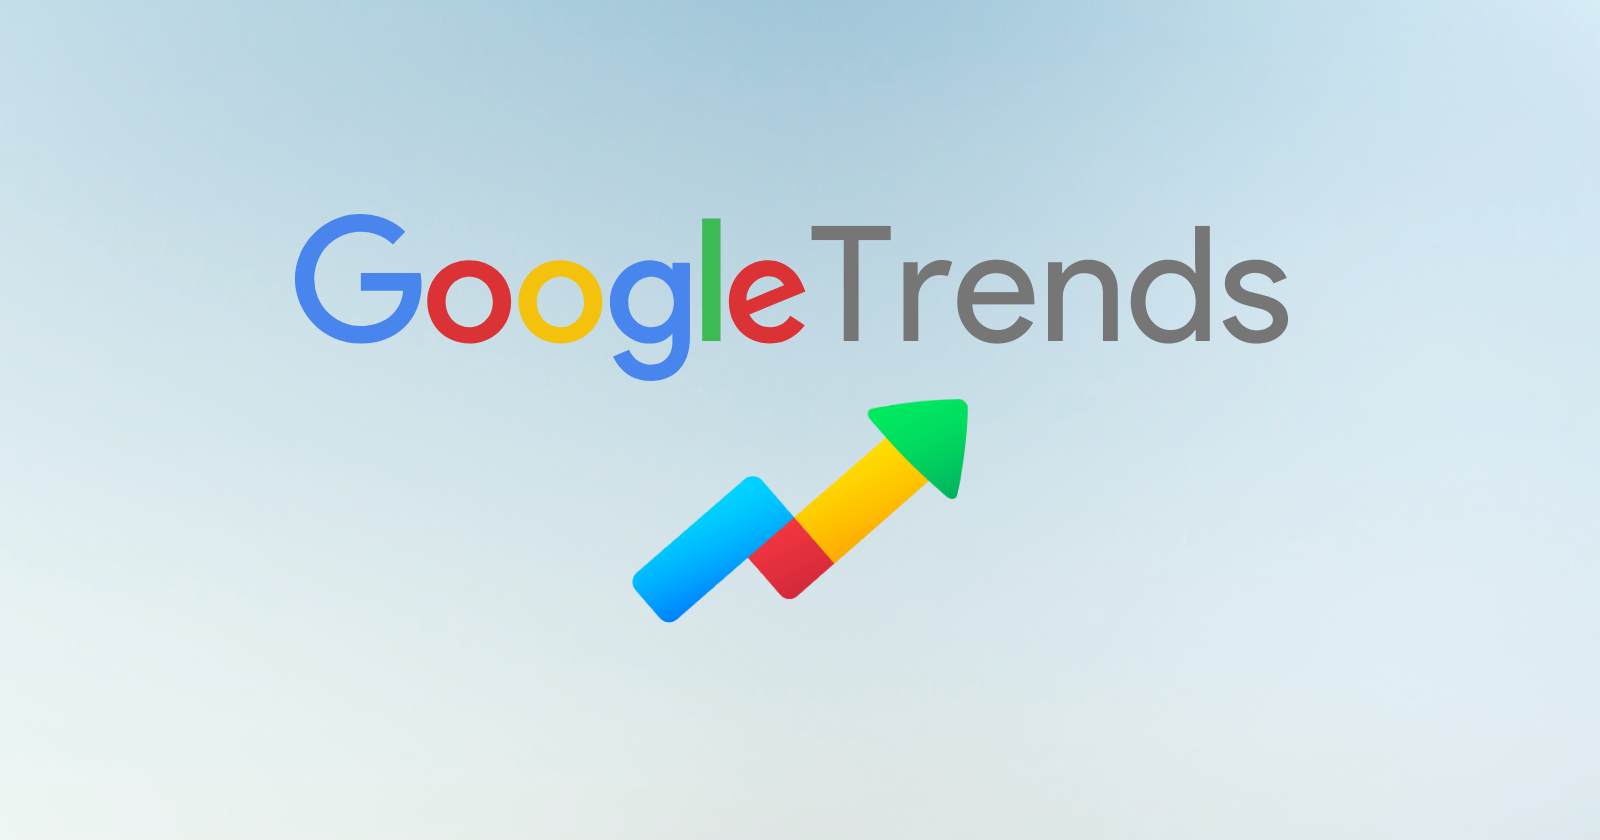 Google Trends work